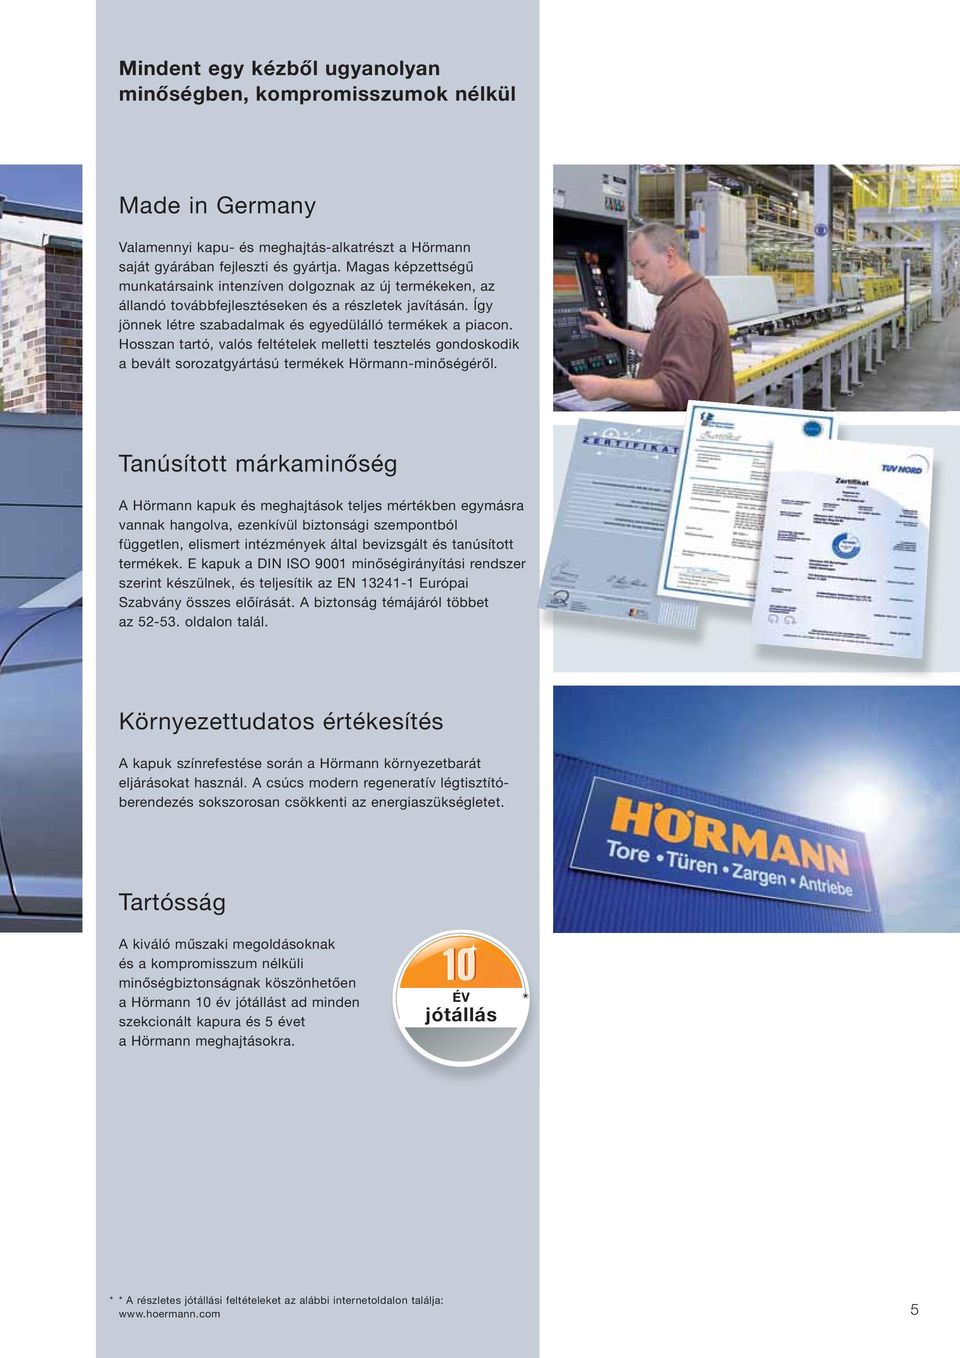 Hosszan tartó, valós feltételek melletti tesztelés gondoskodik a bevált sorozatgyártású termékek Hörmann-minőségéről.